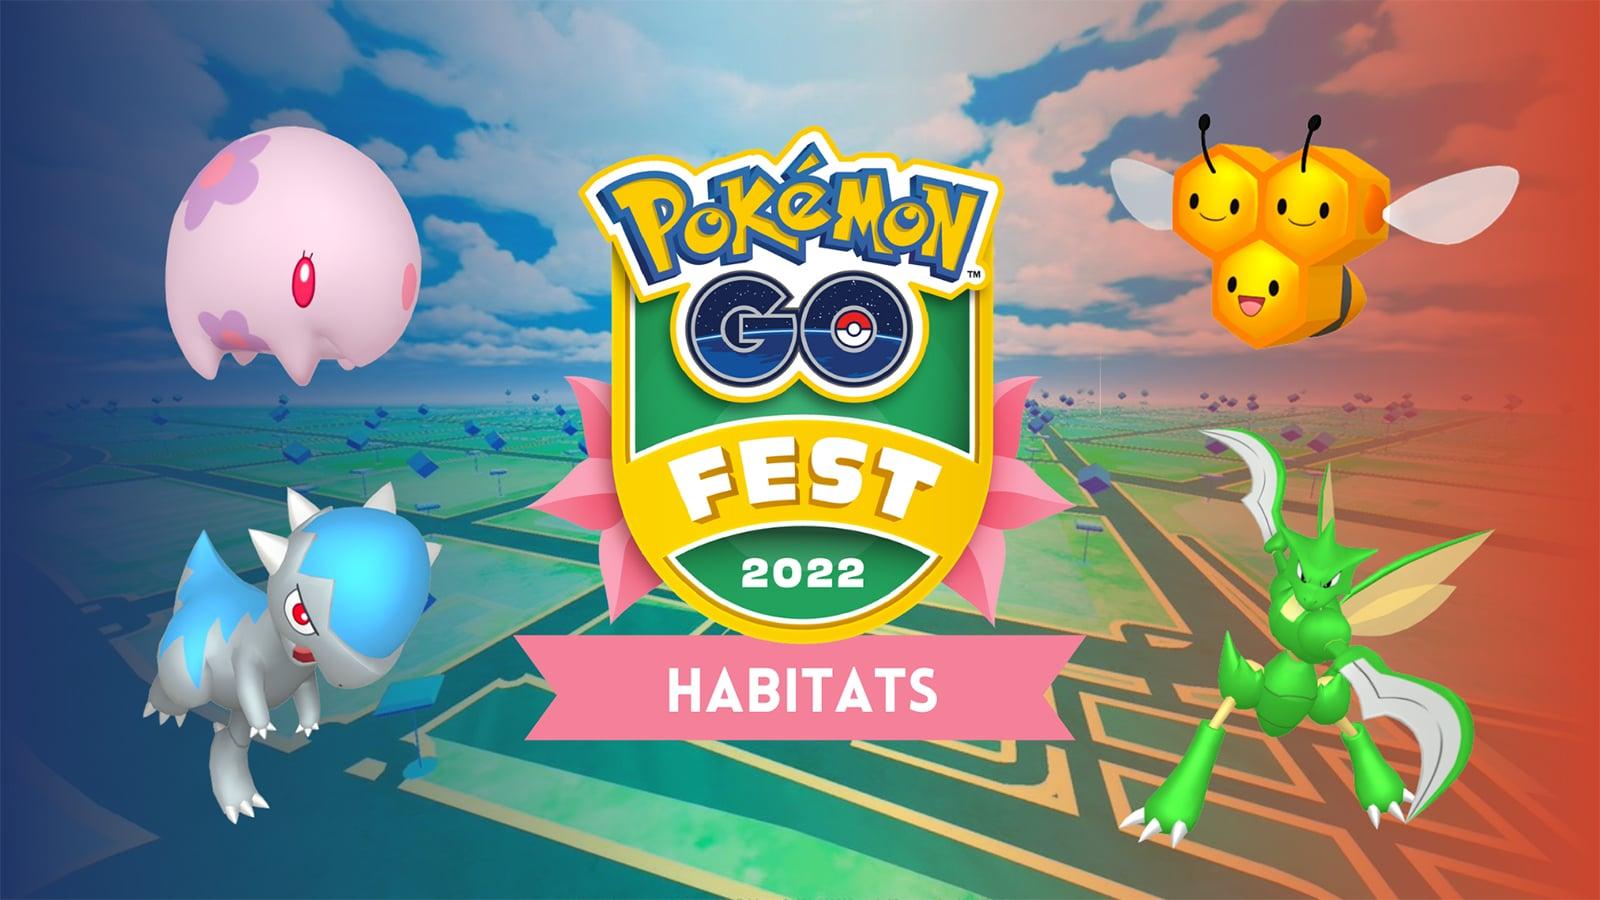 Pokémon GO Fest 2022: Finale